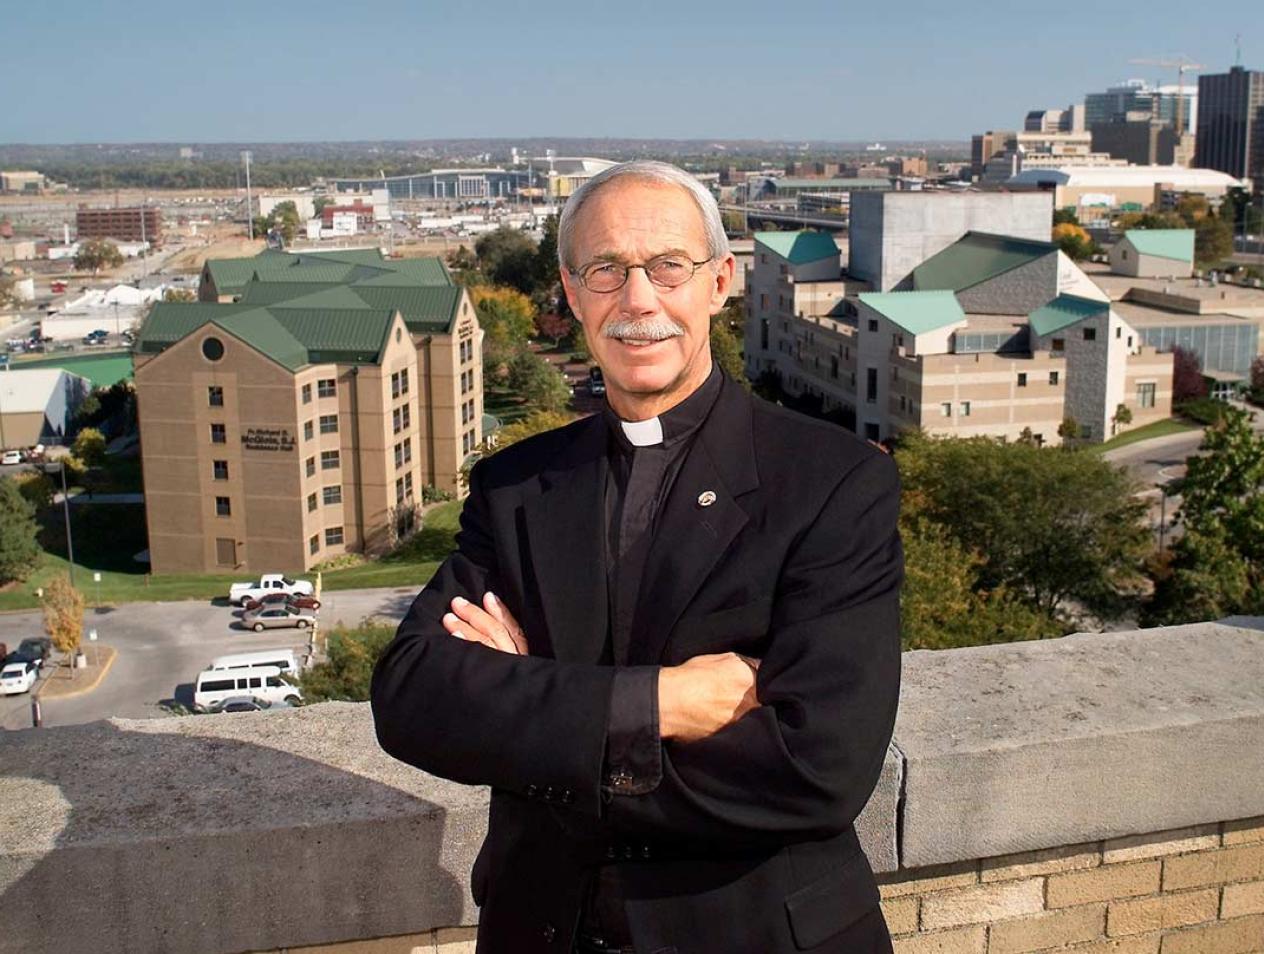 Fr. Schlegel